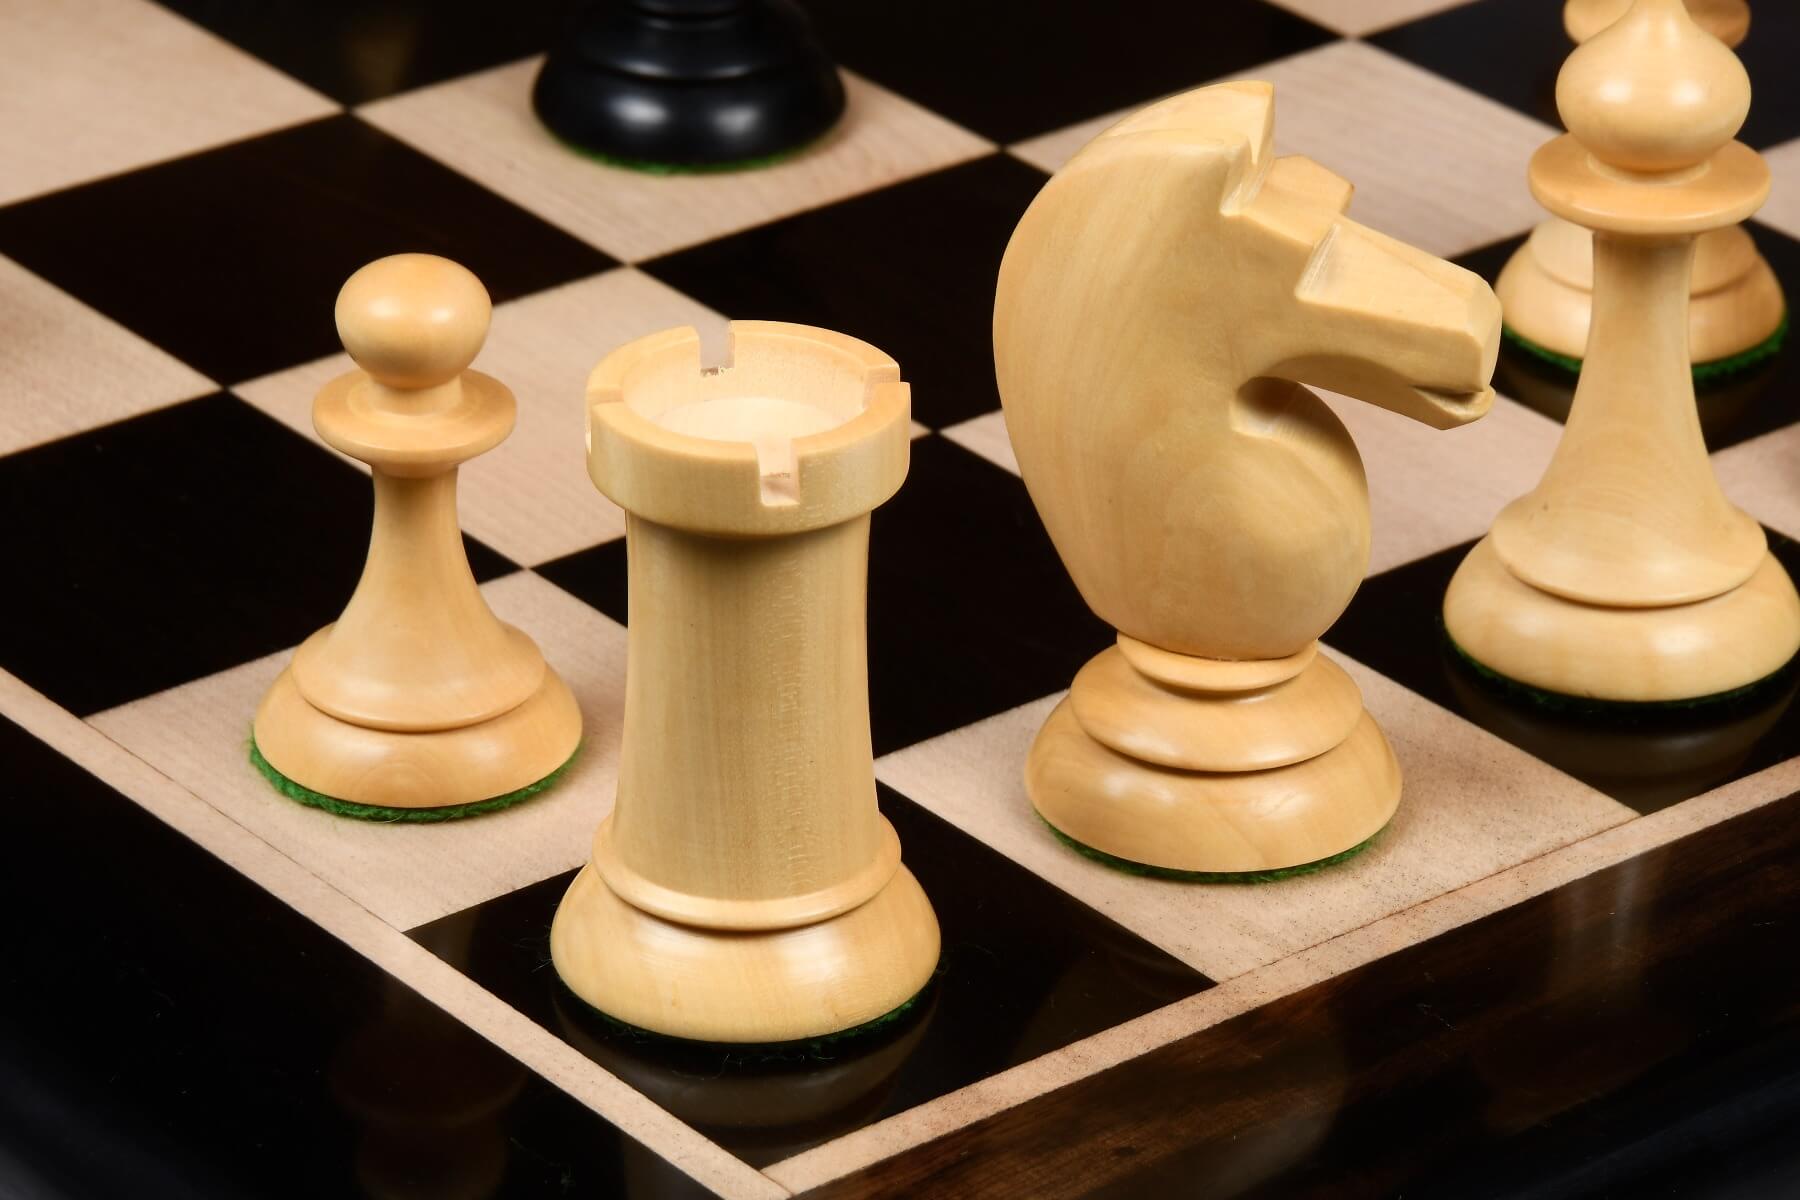 chess set  Schach, Schachfiguren, Schach lernen